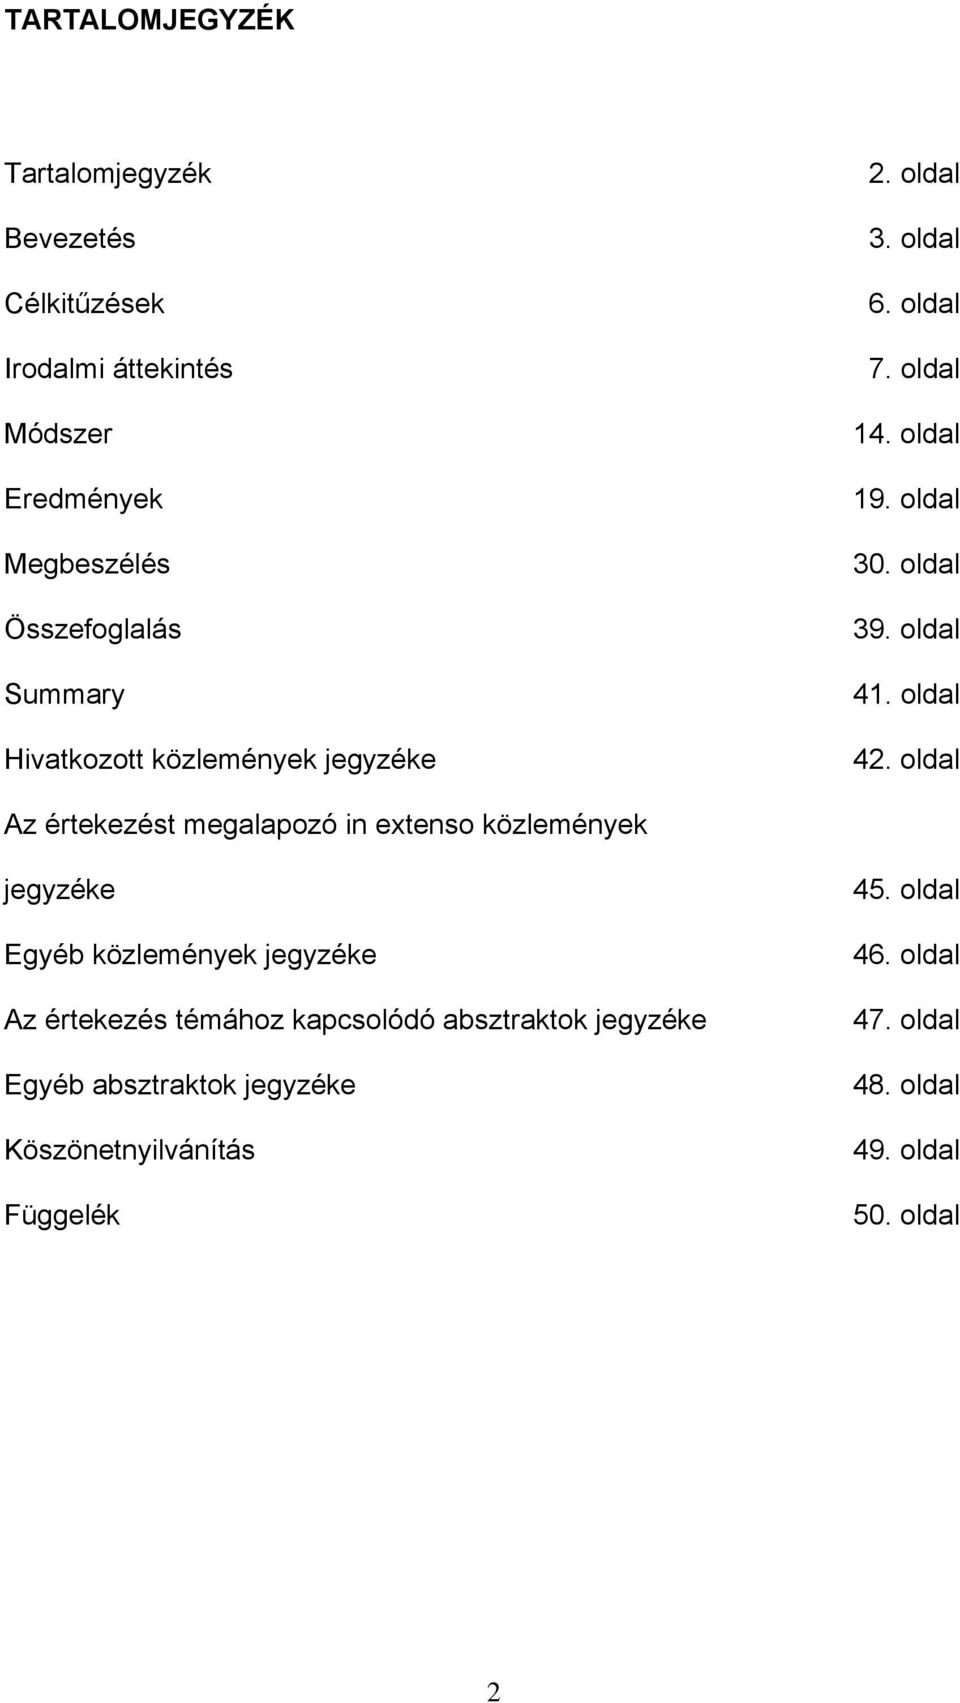 oldal Az értekezést megalapozó in extenso közlemények jegyzéke Egyéb közlemények jegyzéke Az értekezés témához kapcsolódó